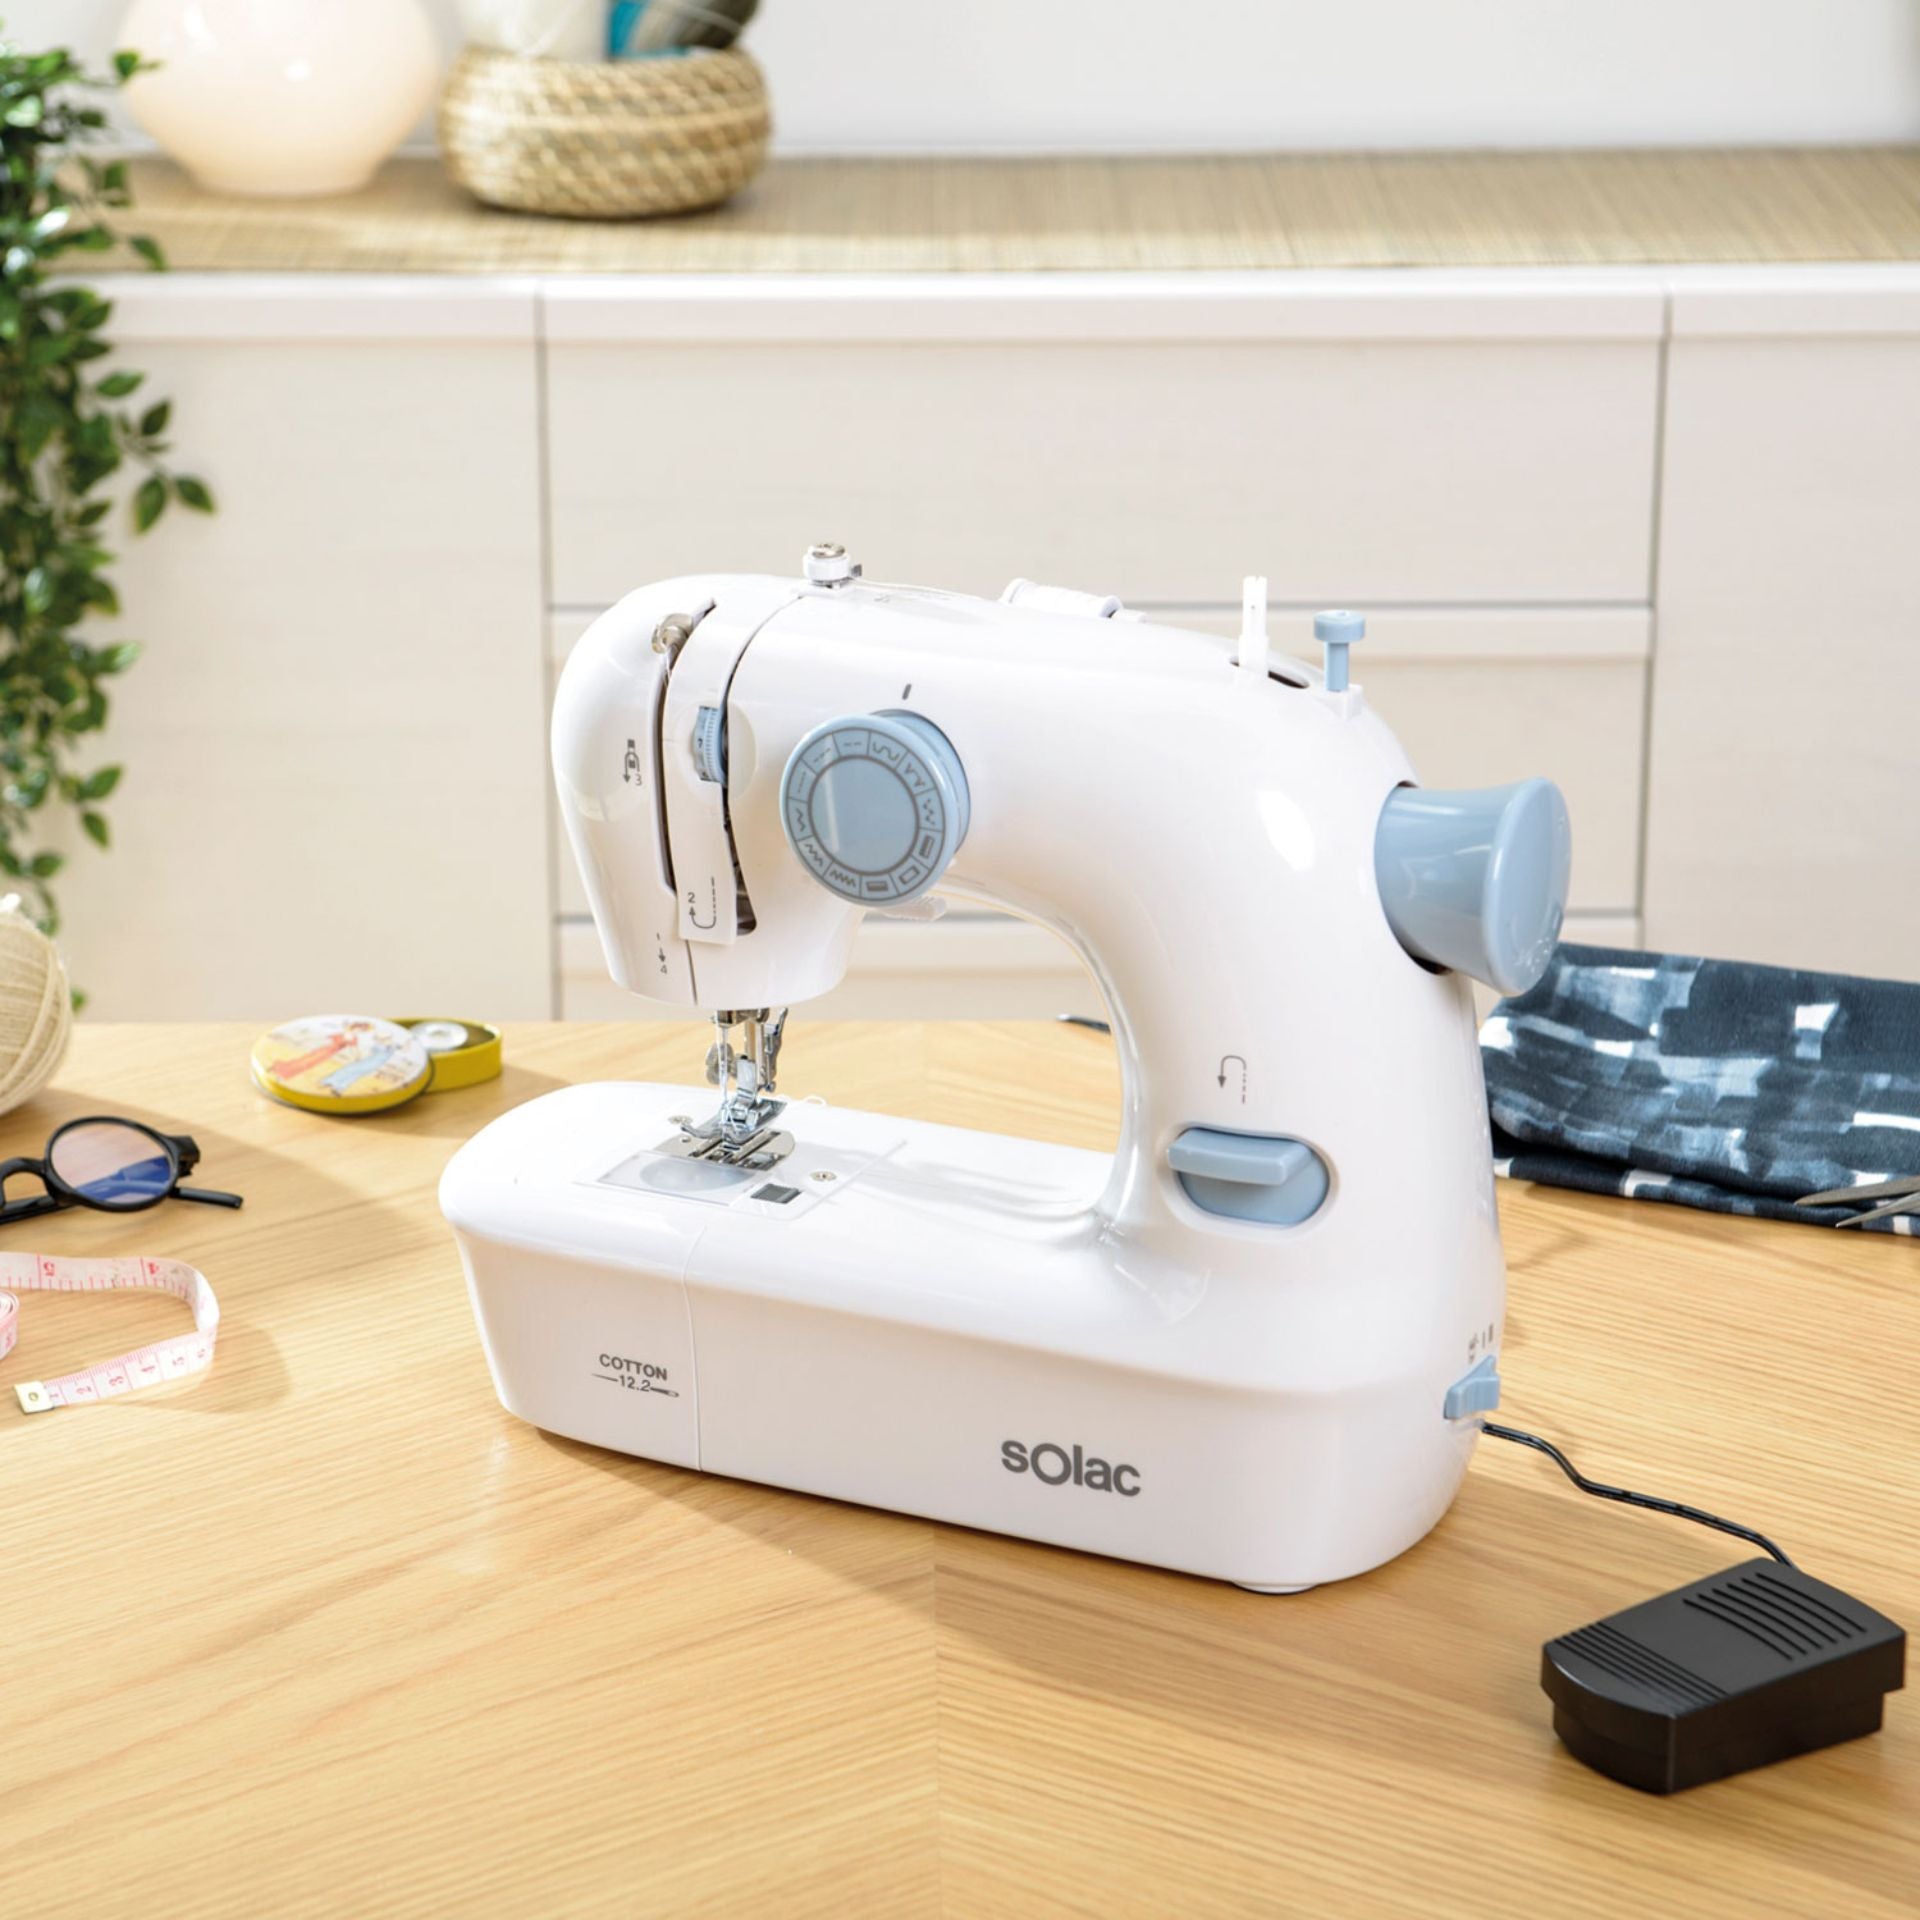 Máquina de coser Cotton 12.2 – sOlac